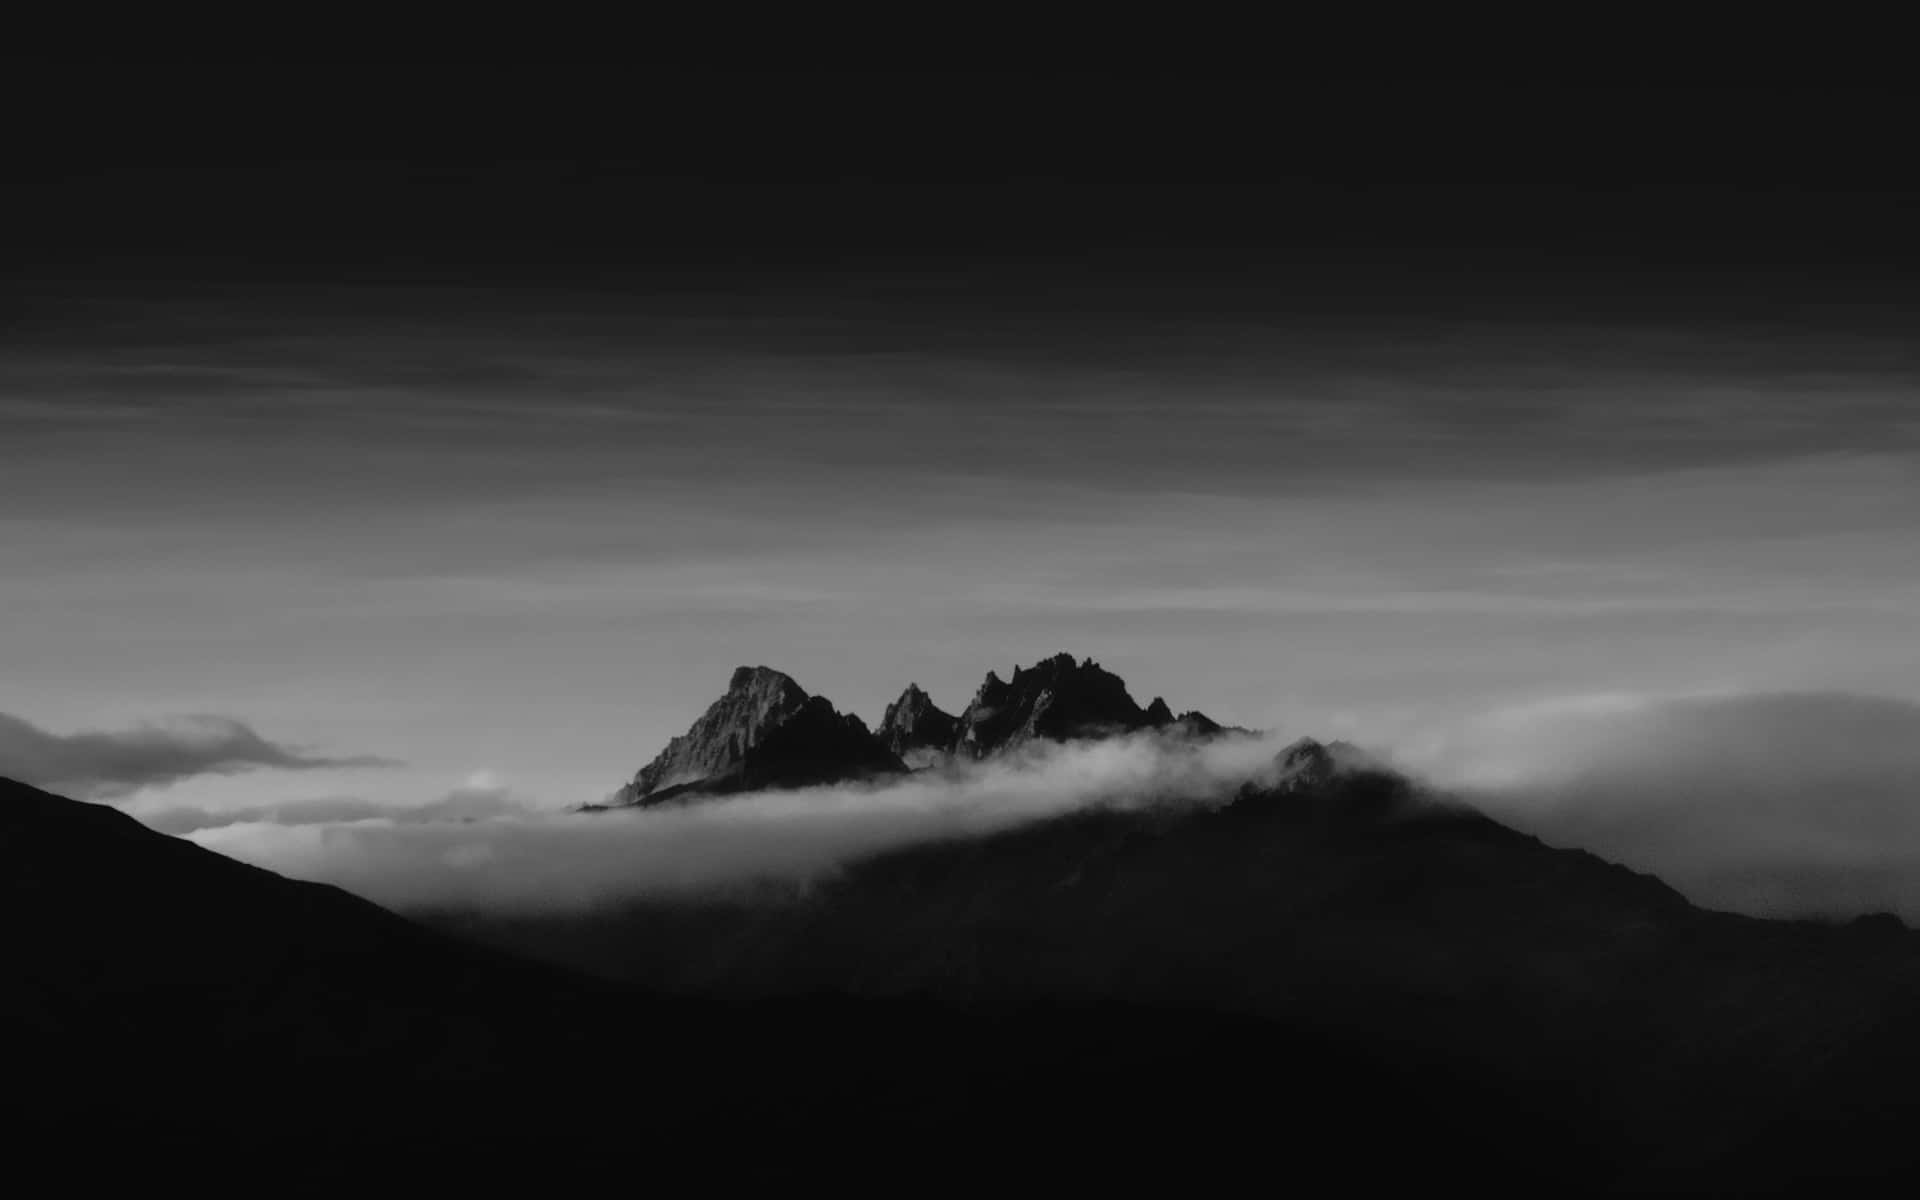 Imponentepaisaje De Montaña Oscura Al Anochecer. Fondo de pantalla